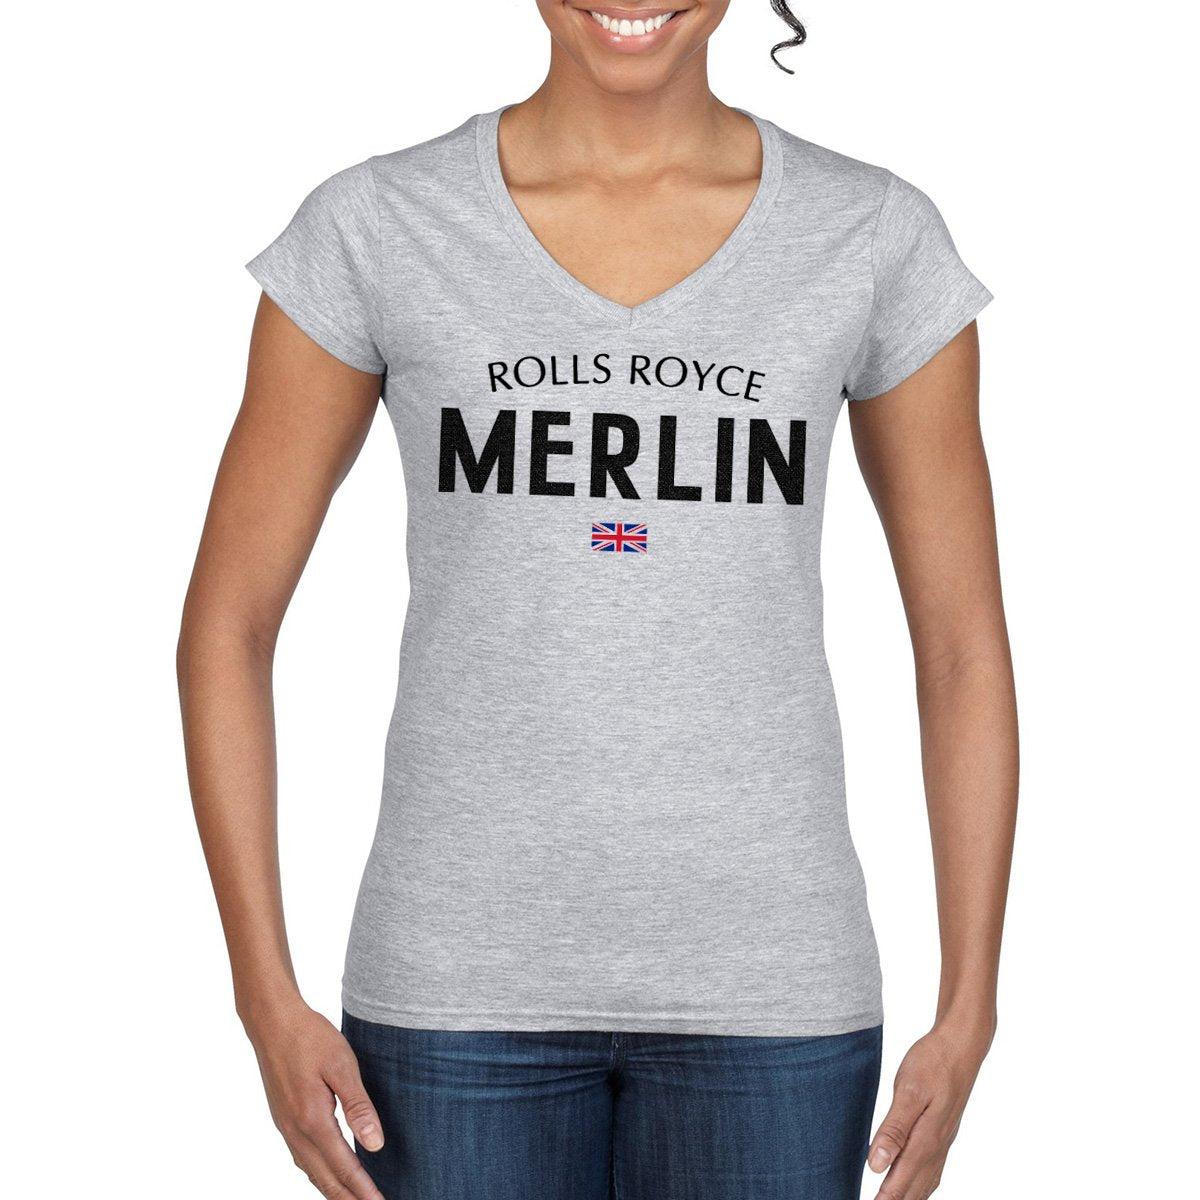 Women's MERLIN Semi-Fitted V-Neck T-Shirt